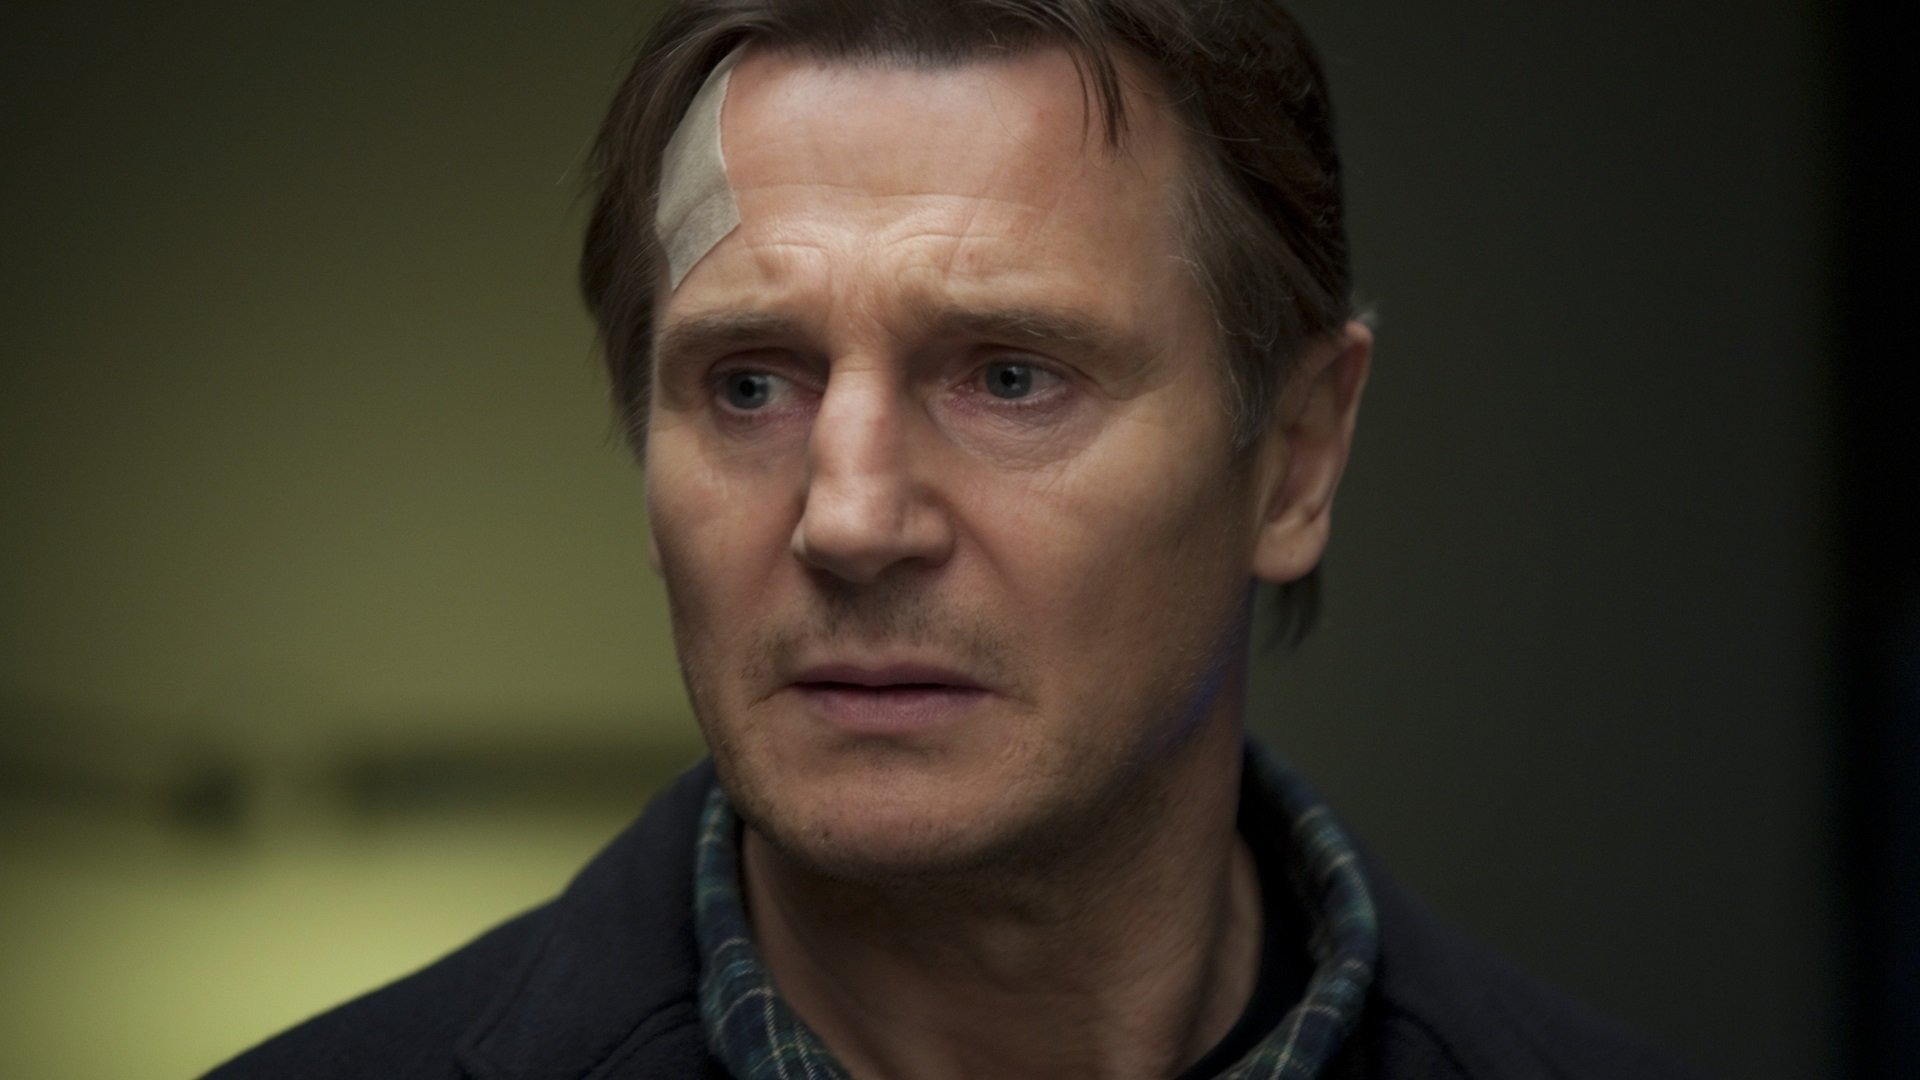 Ce soir à la TV : sorti il y a 13 ans, ce thriller avec Liam Neeson va vous retourner le cerveau